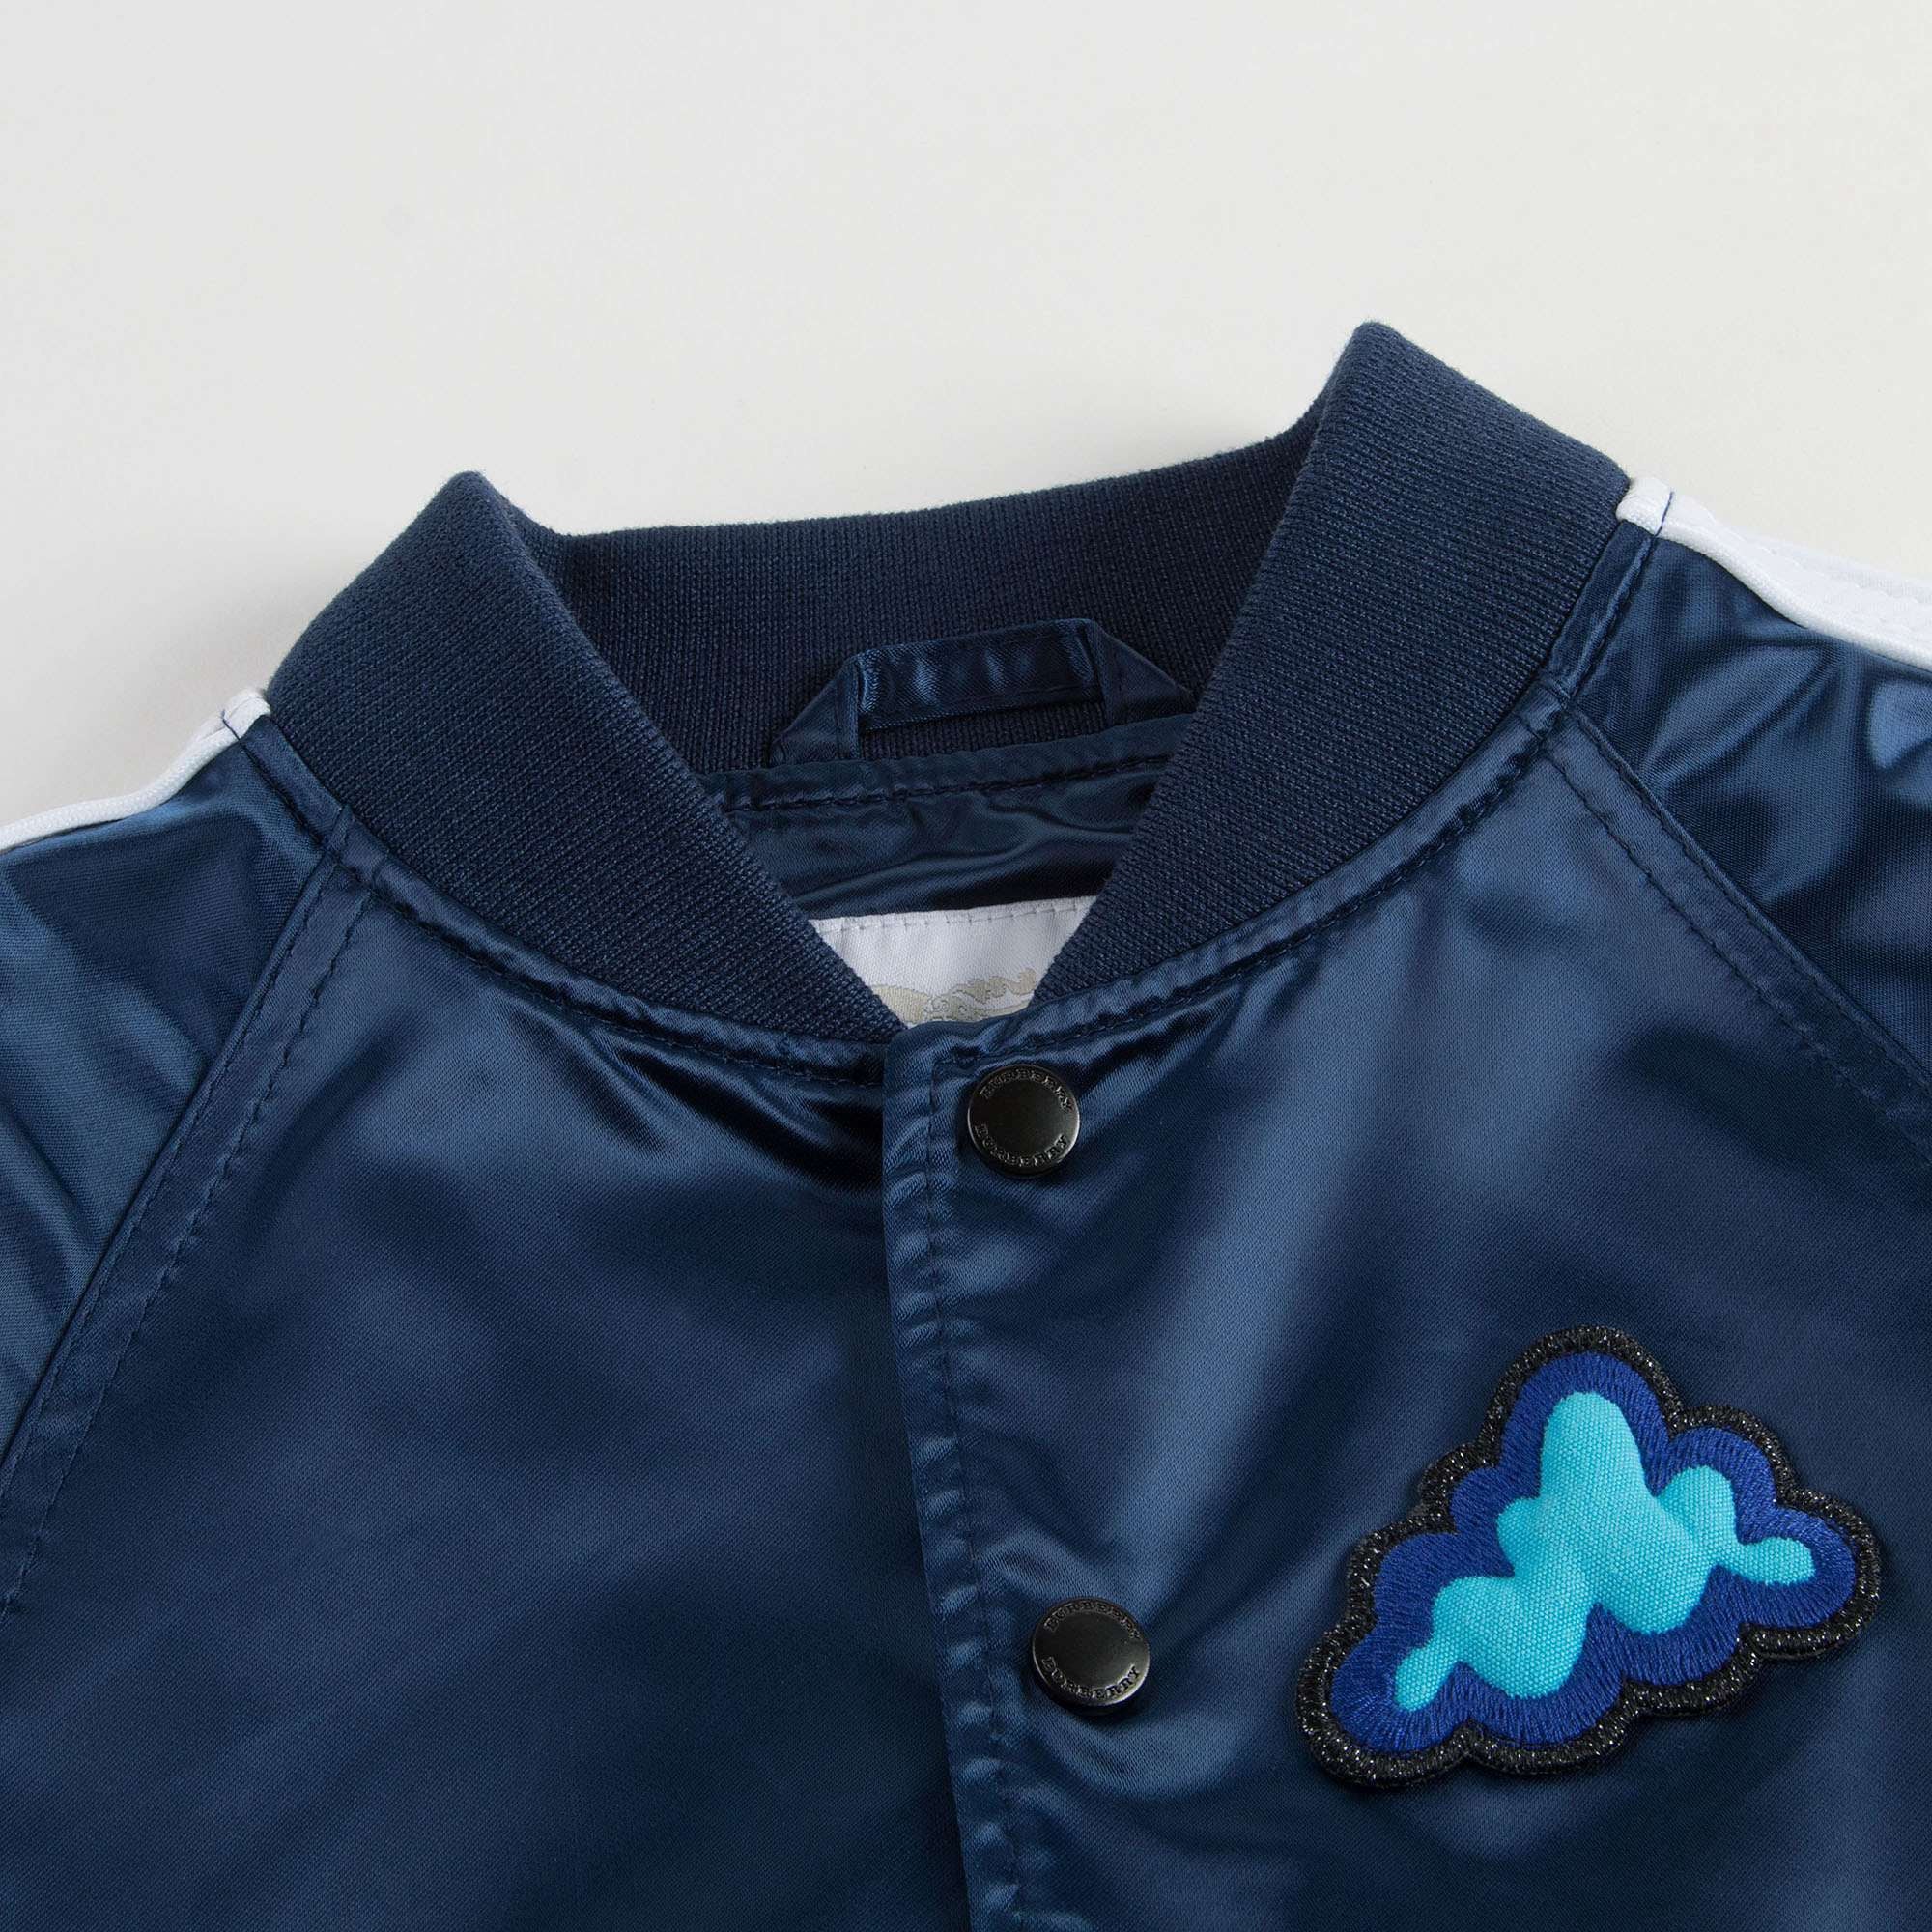 Boys Blue Cloud Printed Jacket